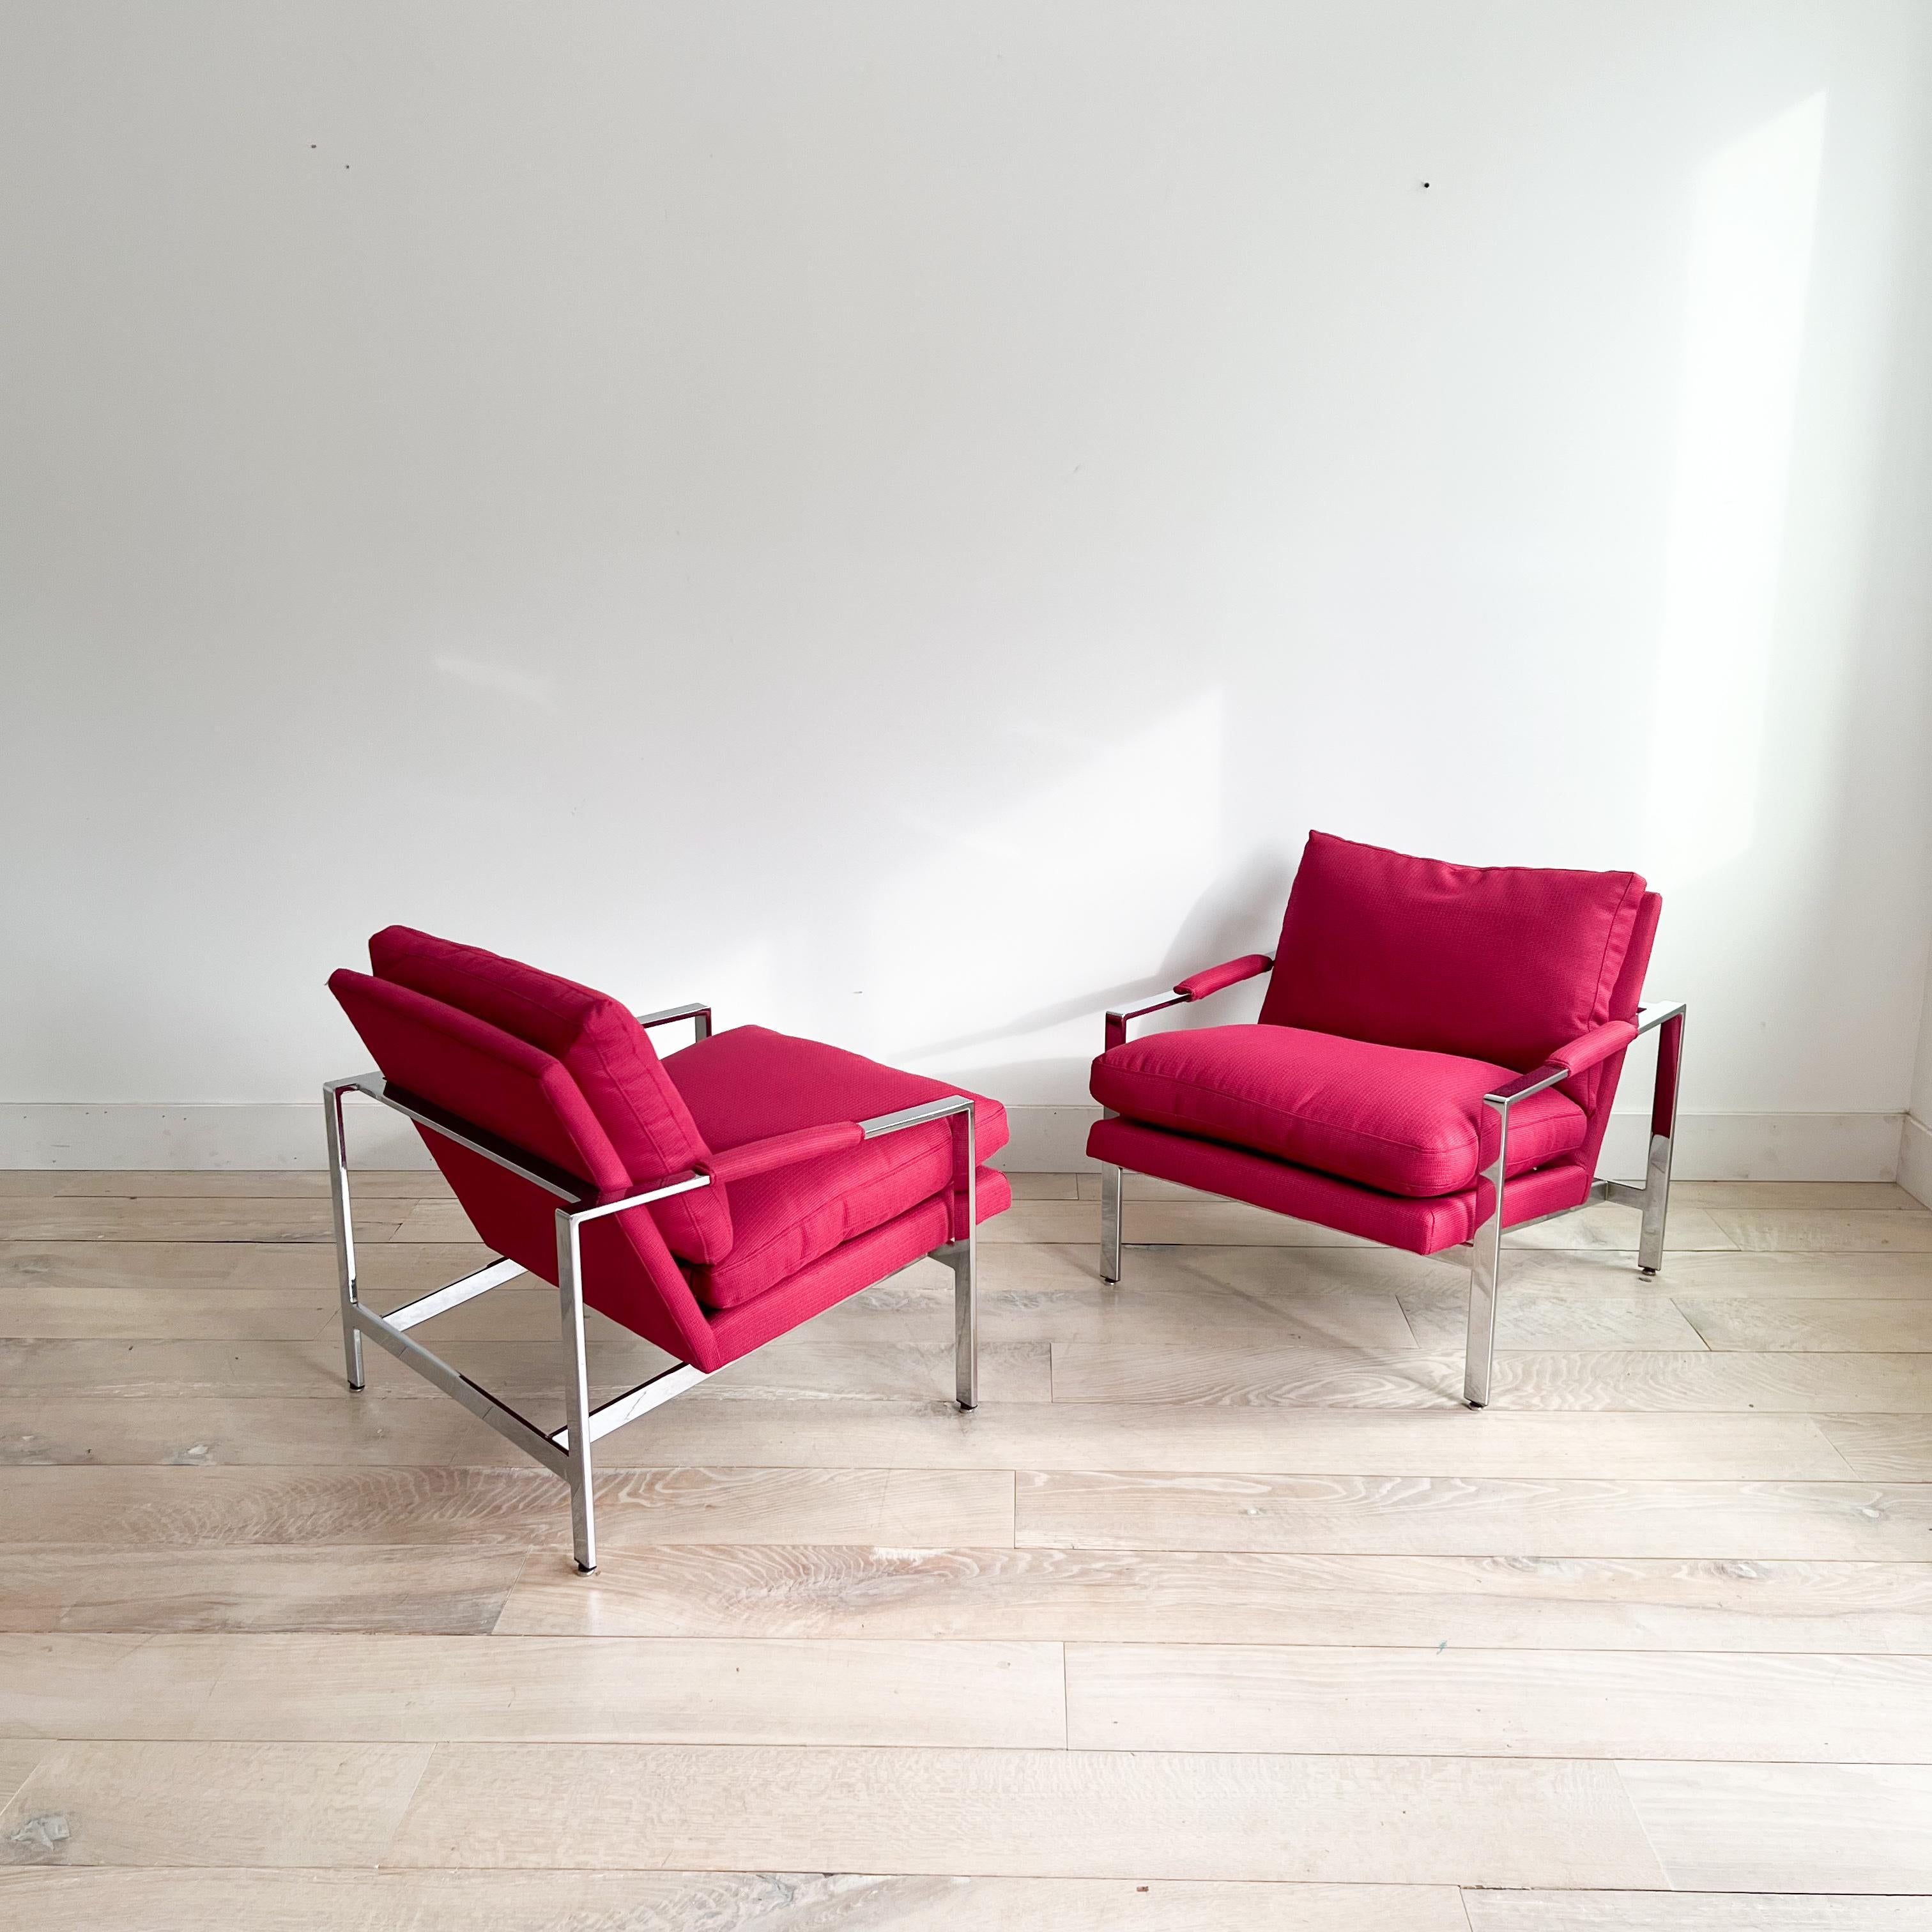 Verschönern Sie Ihren Wohnbereich mit diesem stilvollen Paar moderner Loungesessel aus der Mitte des Jahrhunderts, die der bekannte Designer Milo Baughman für Thayer Coggin entworfen hat. Mit ihrem eleganten Chromgestell und der leuchtend